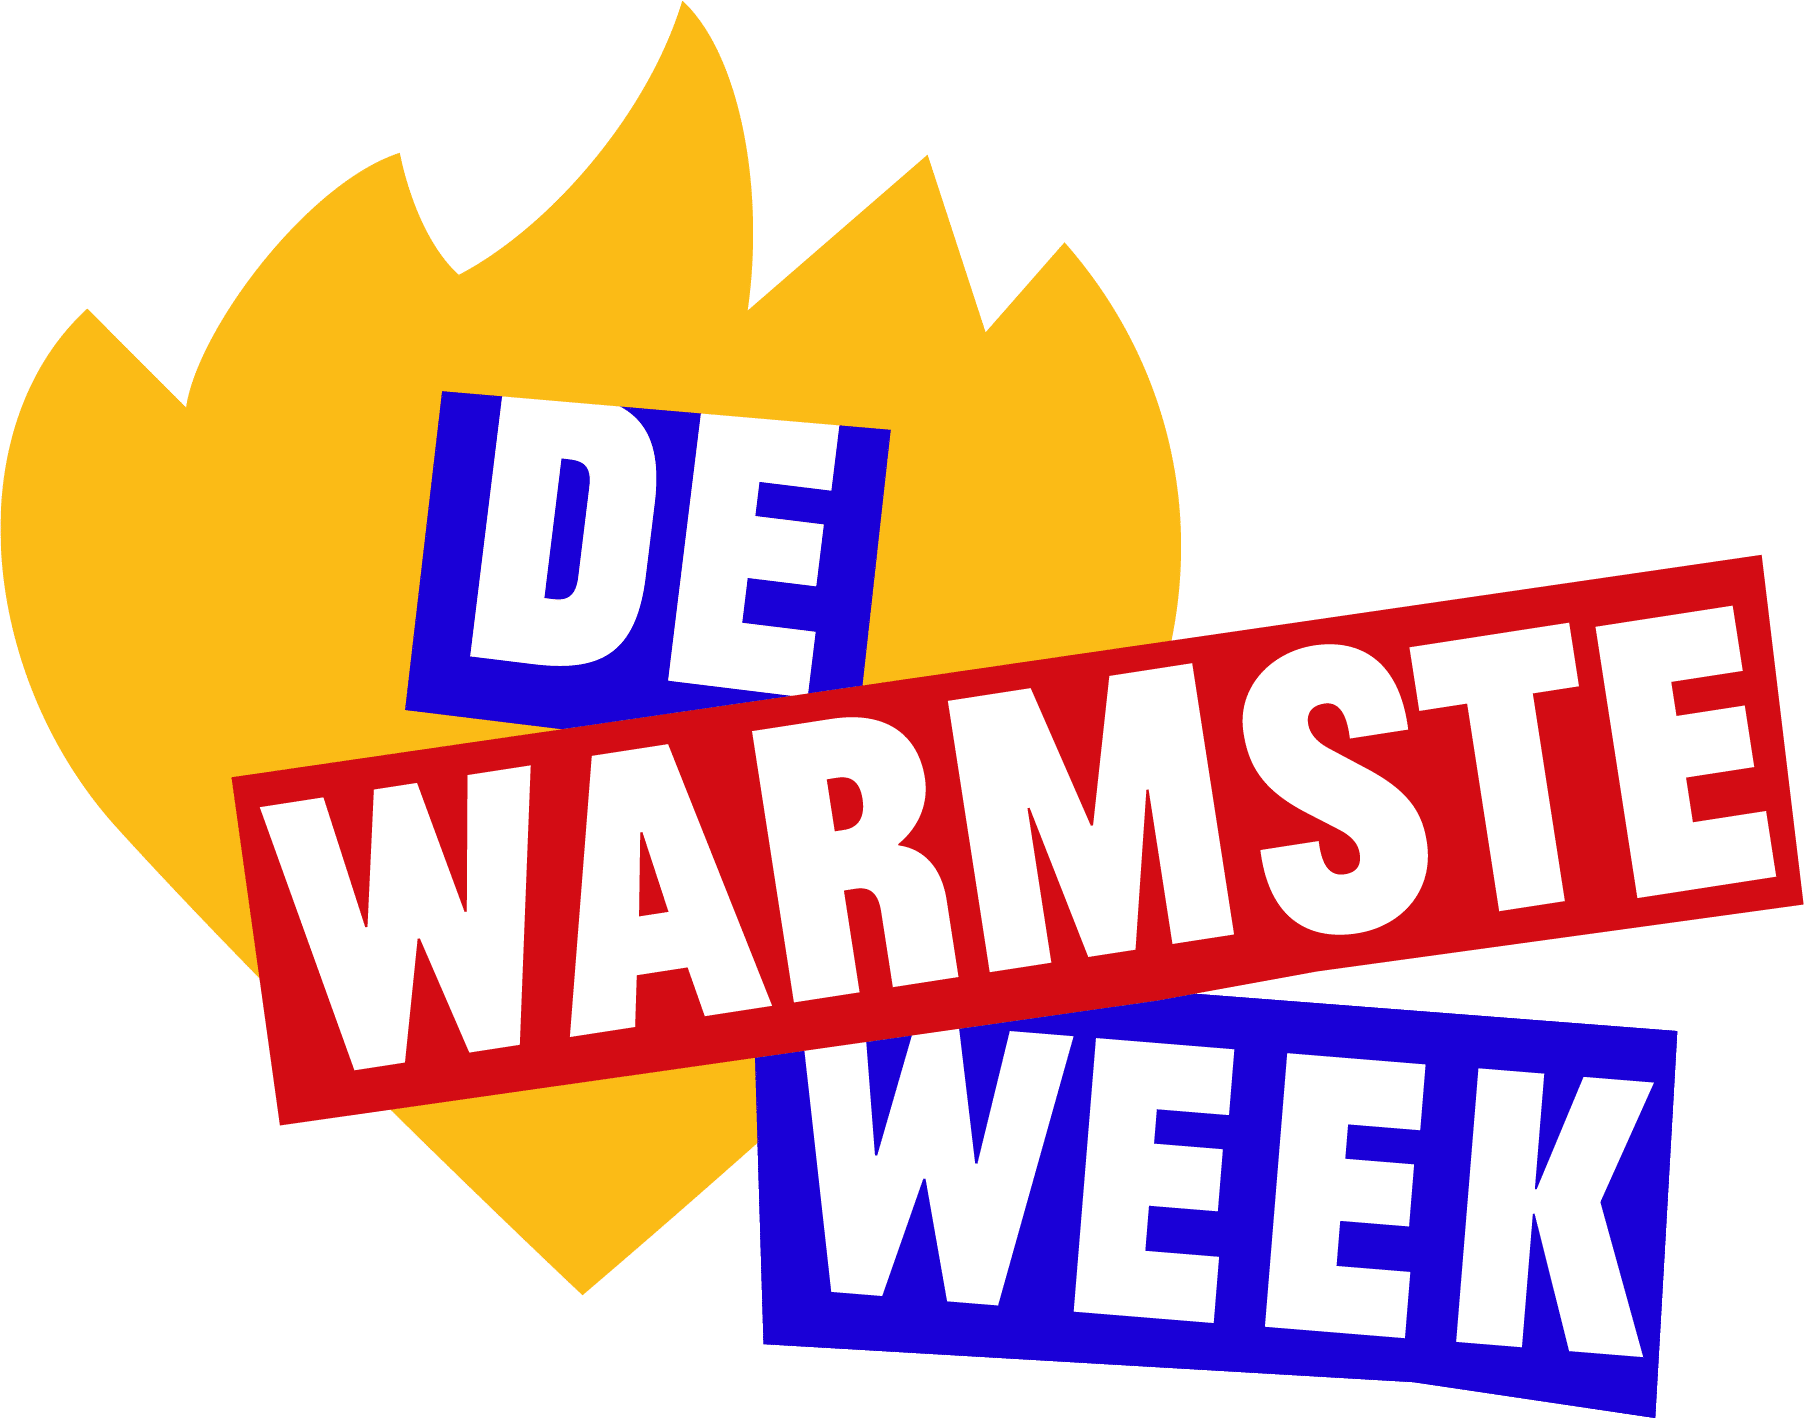 logo warmste week